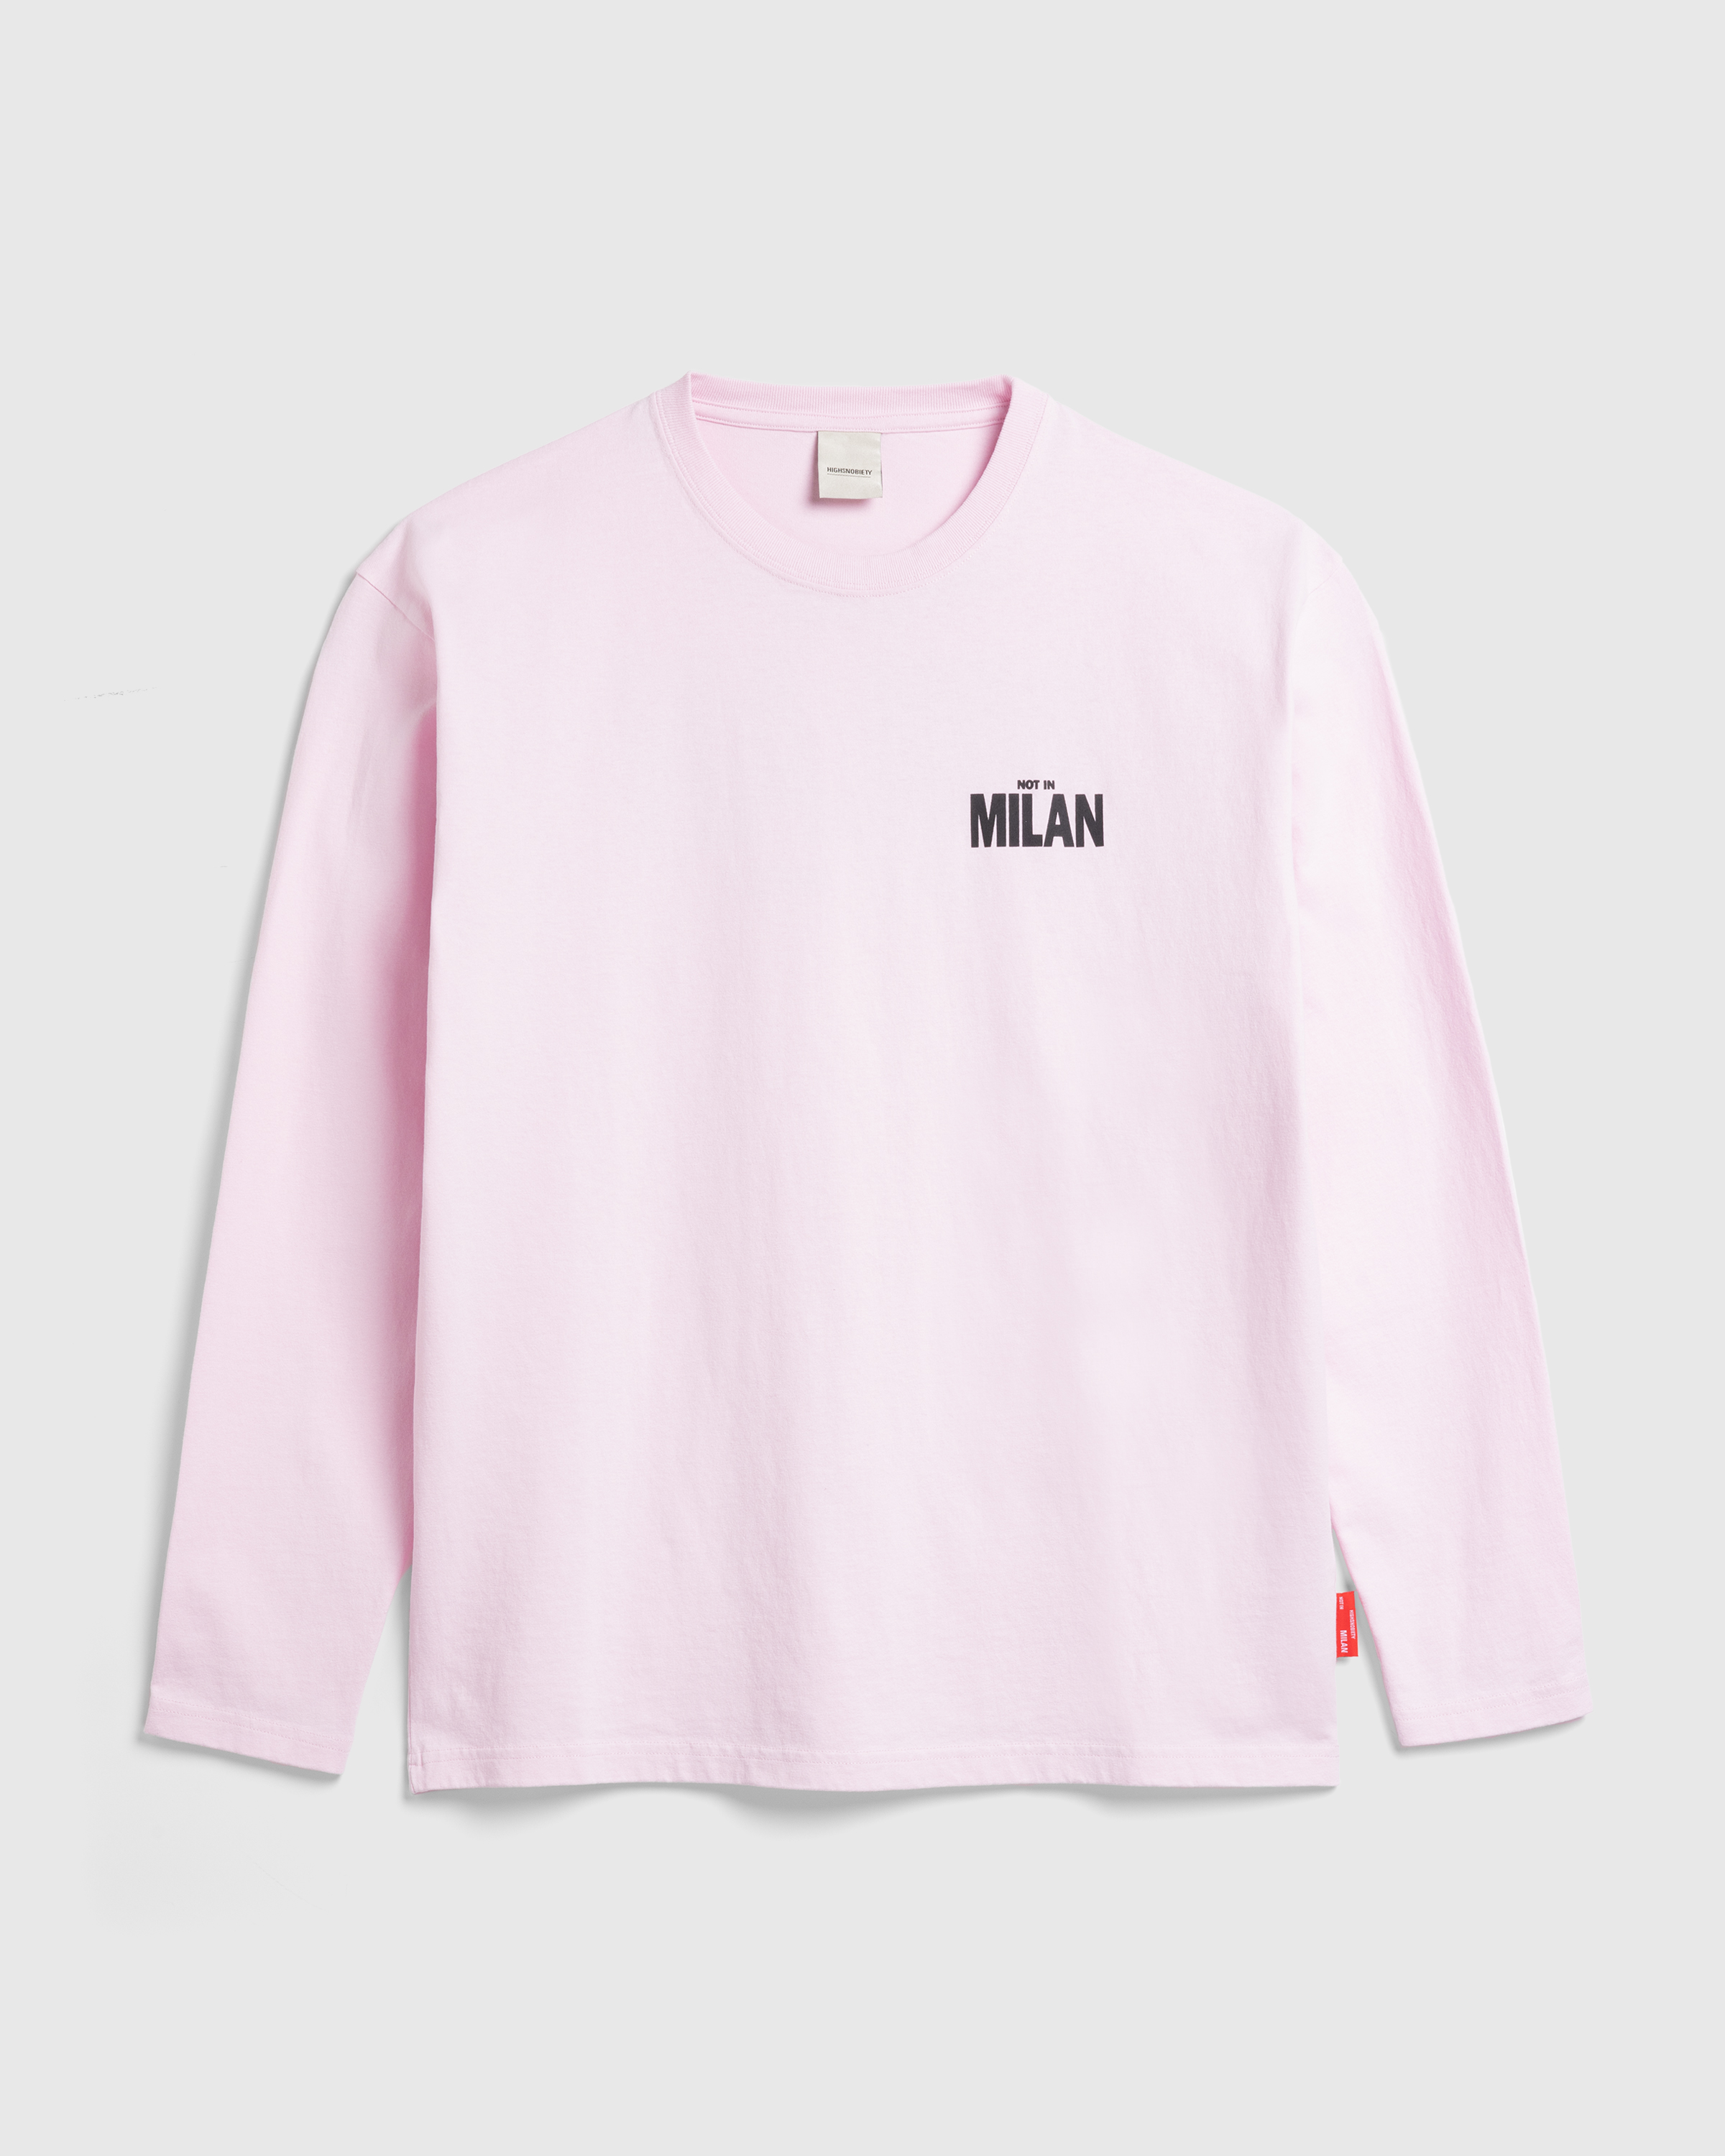 Highsnobiety – Not in Milan Long-Sleeve Pink - Longsleeves - Pink - Image 3